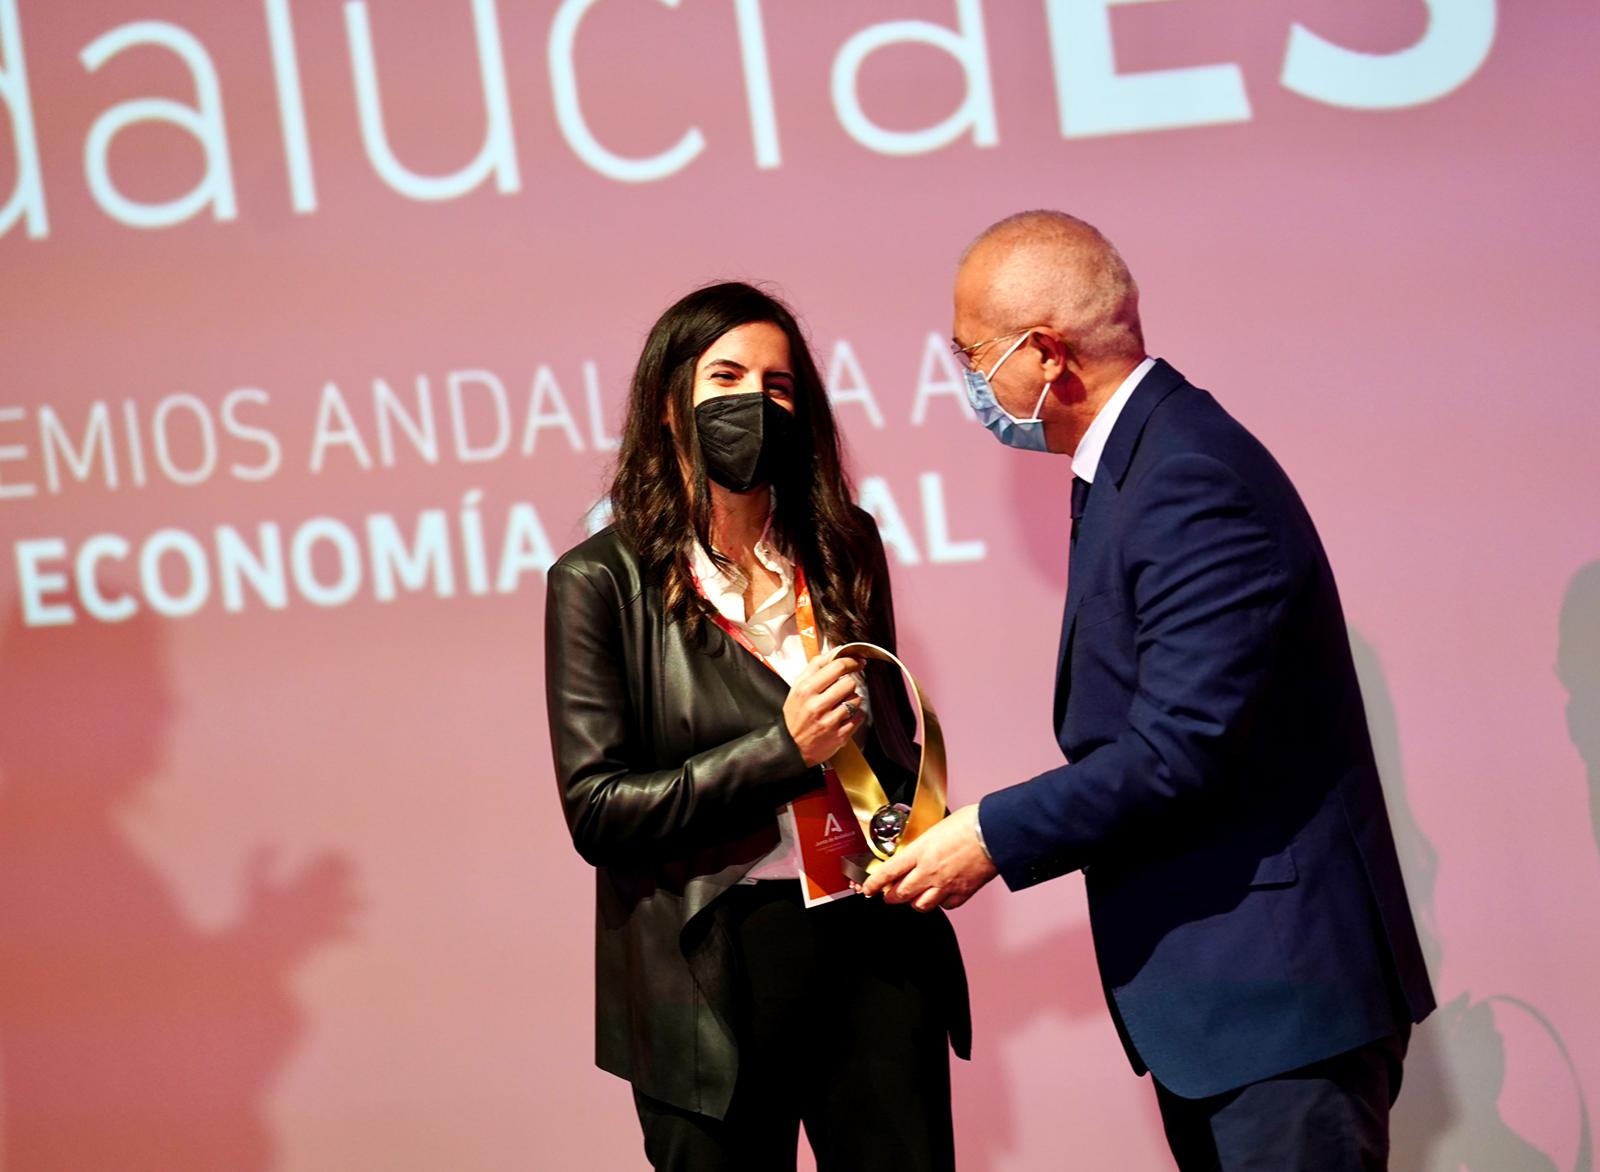 La firma granadina ‘Createc 4’ de impresión 3D recibe el galardón al mejor proyecto innovador en los Premios Andalucía Economía Social